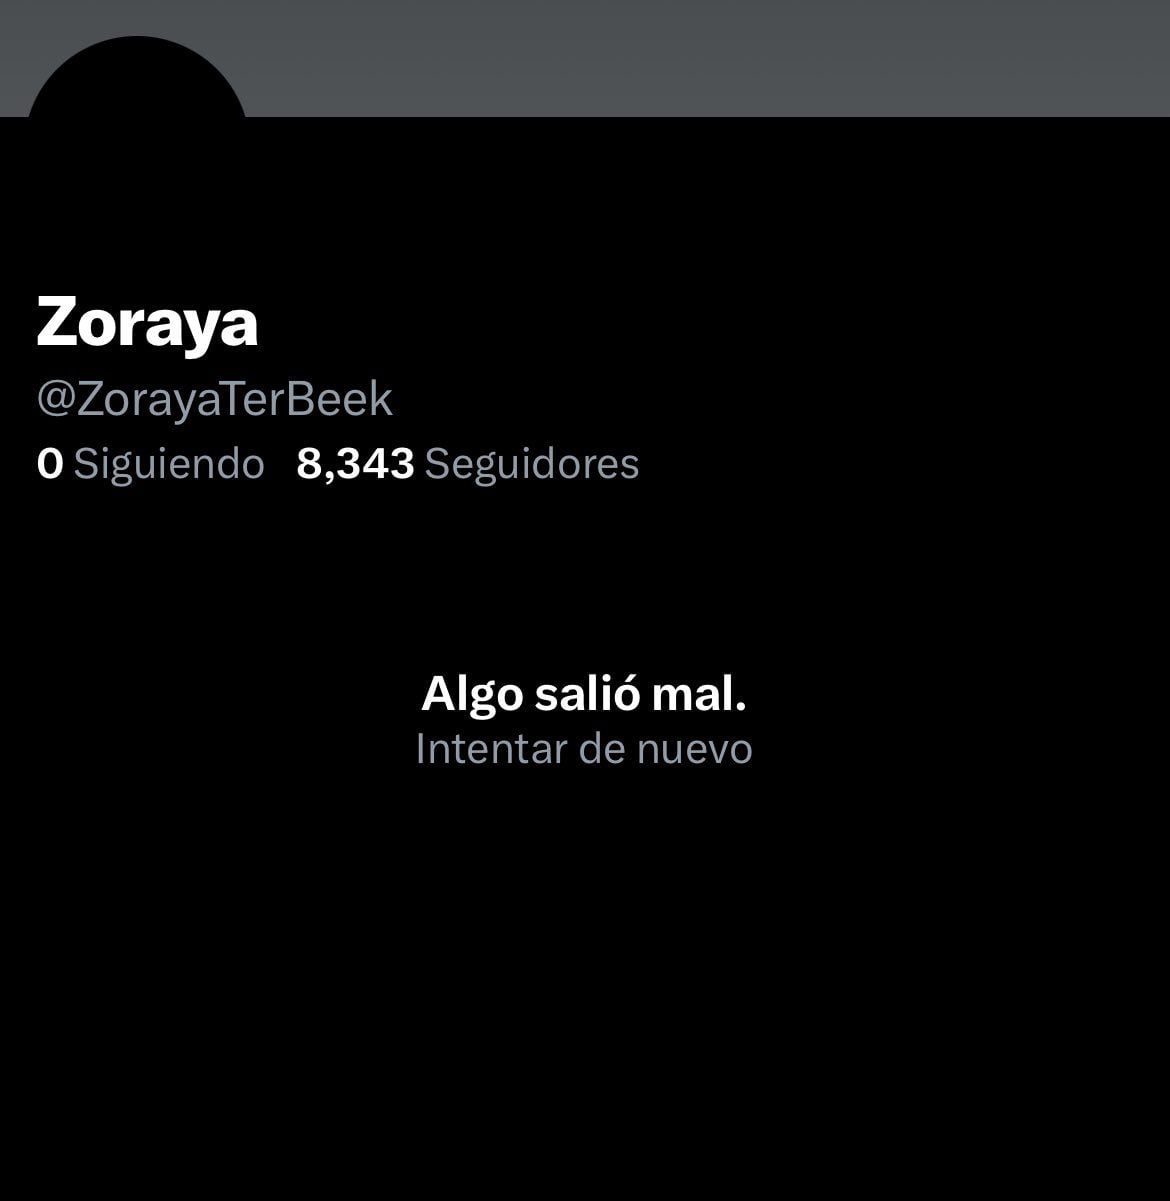 La cuenta de Zoraya fue eliminada después de que prometiera eliminar sus cuentas en las redes sociales